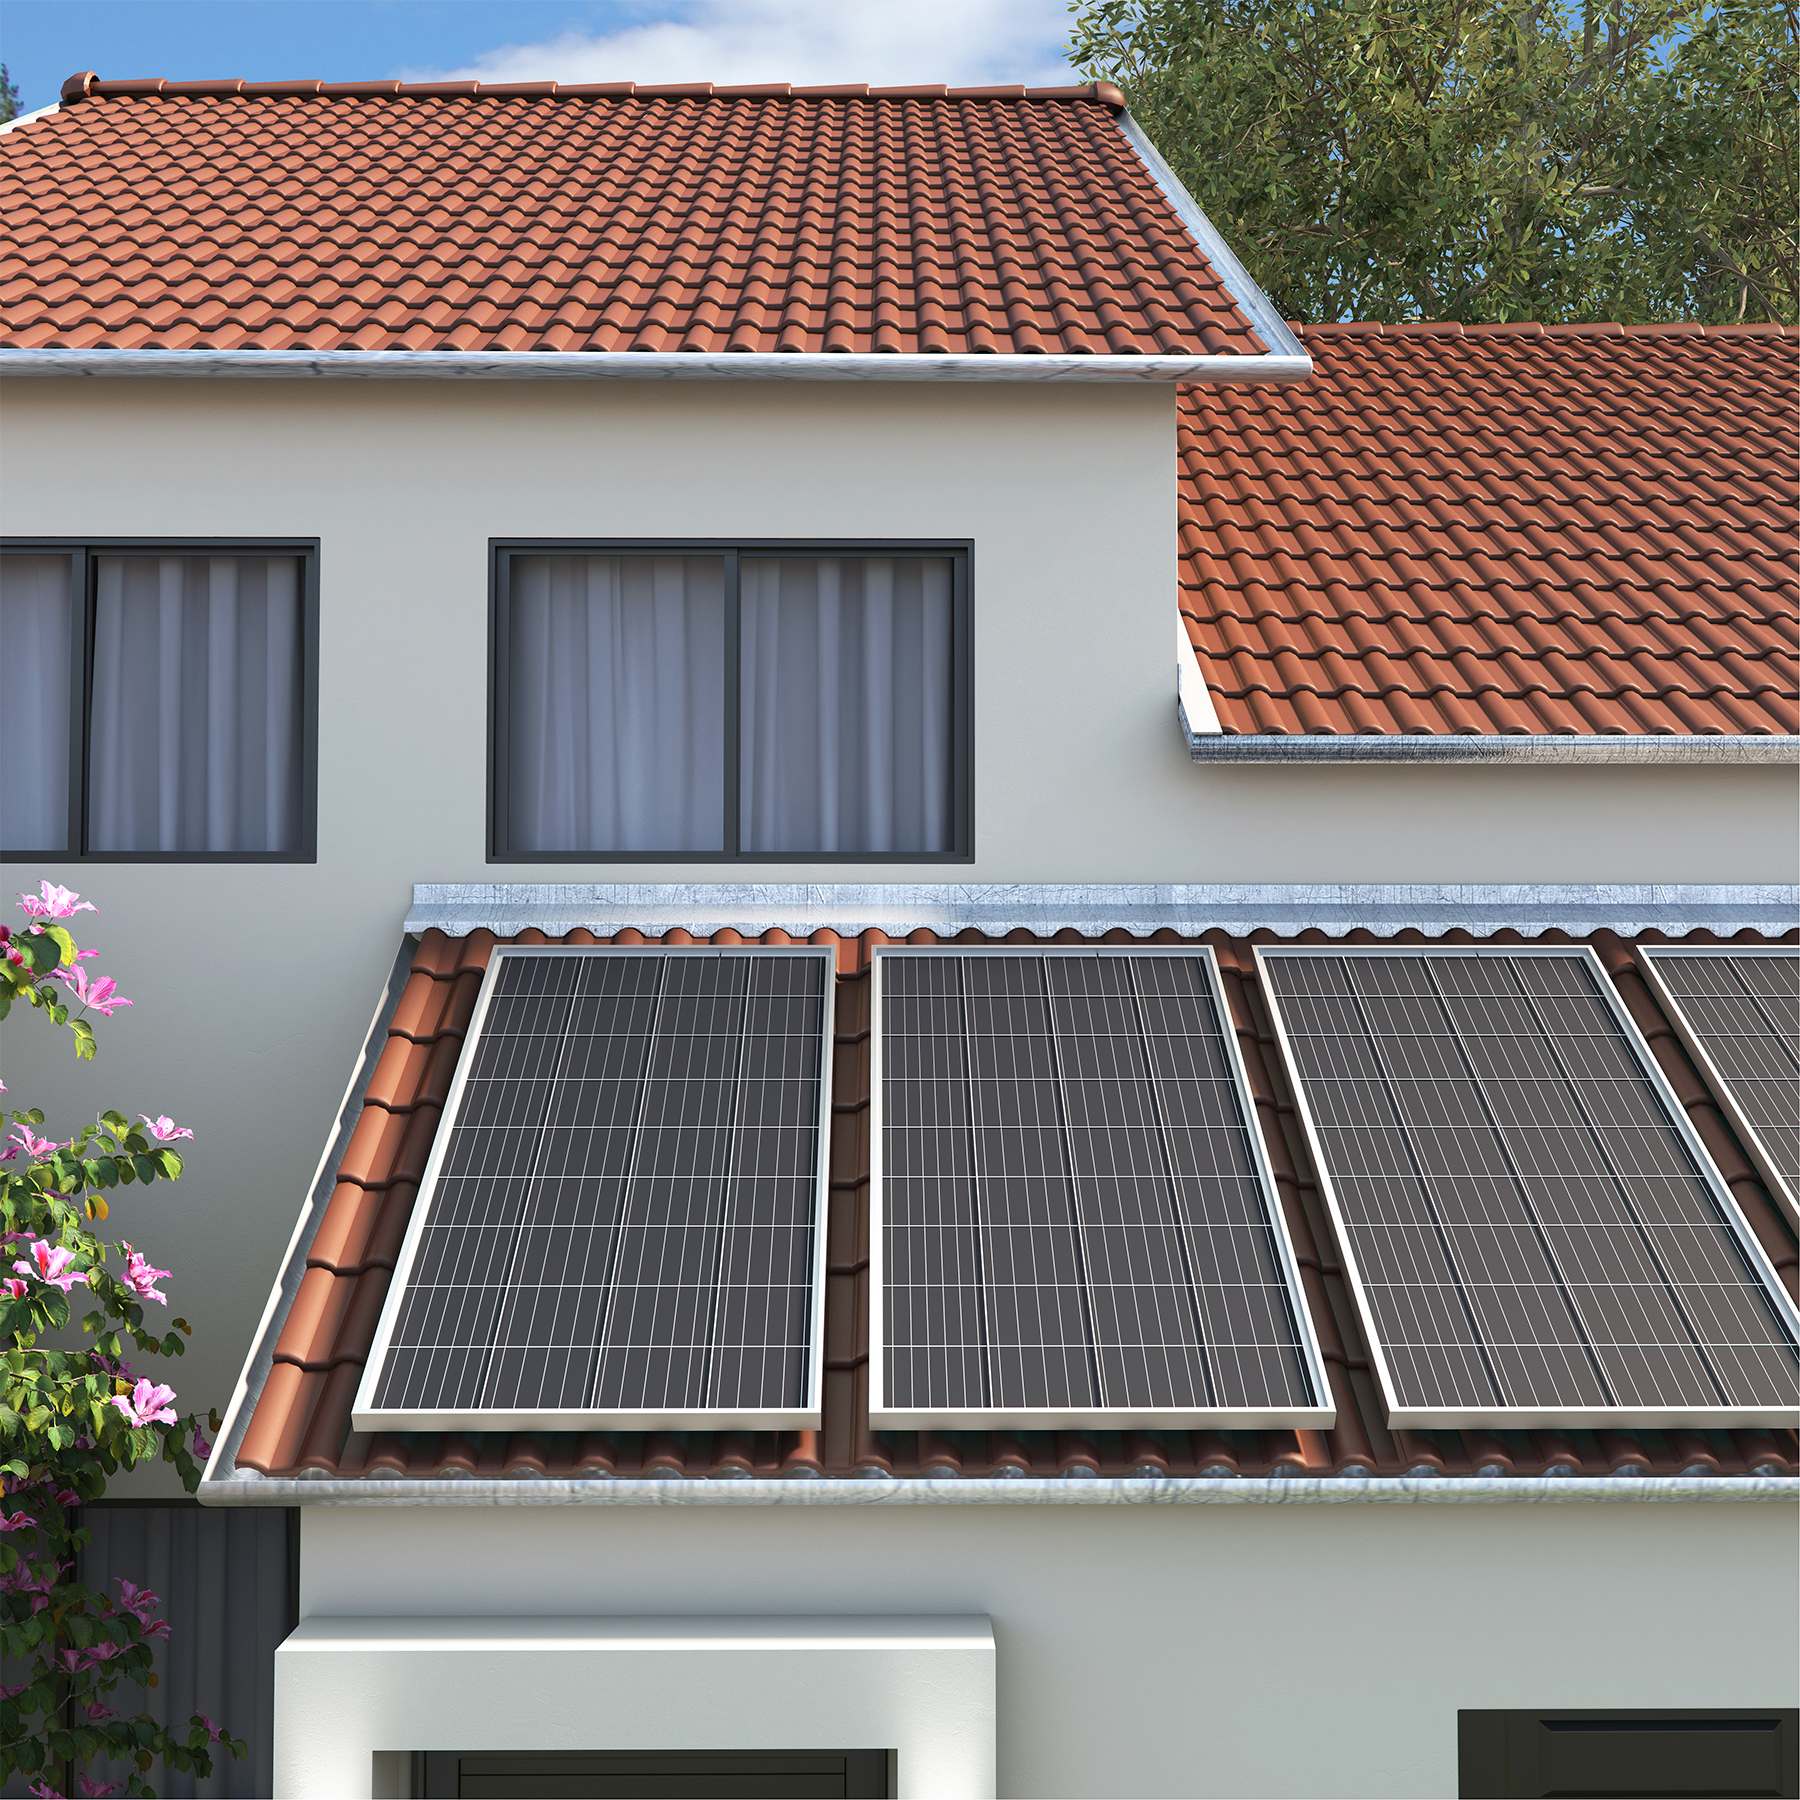 sistema fotovoltaico: kit de placa solar com 4 placas